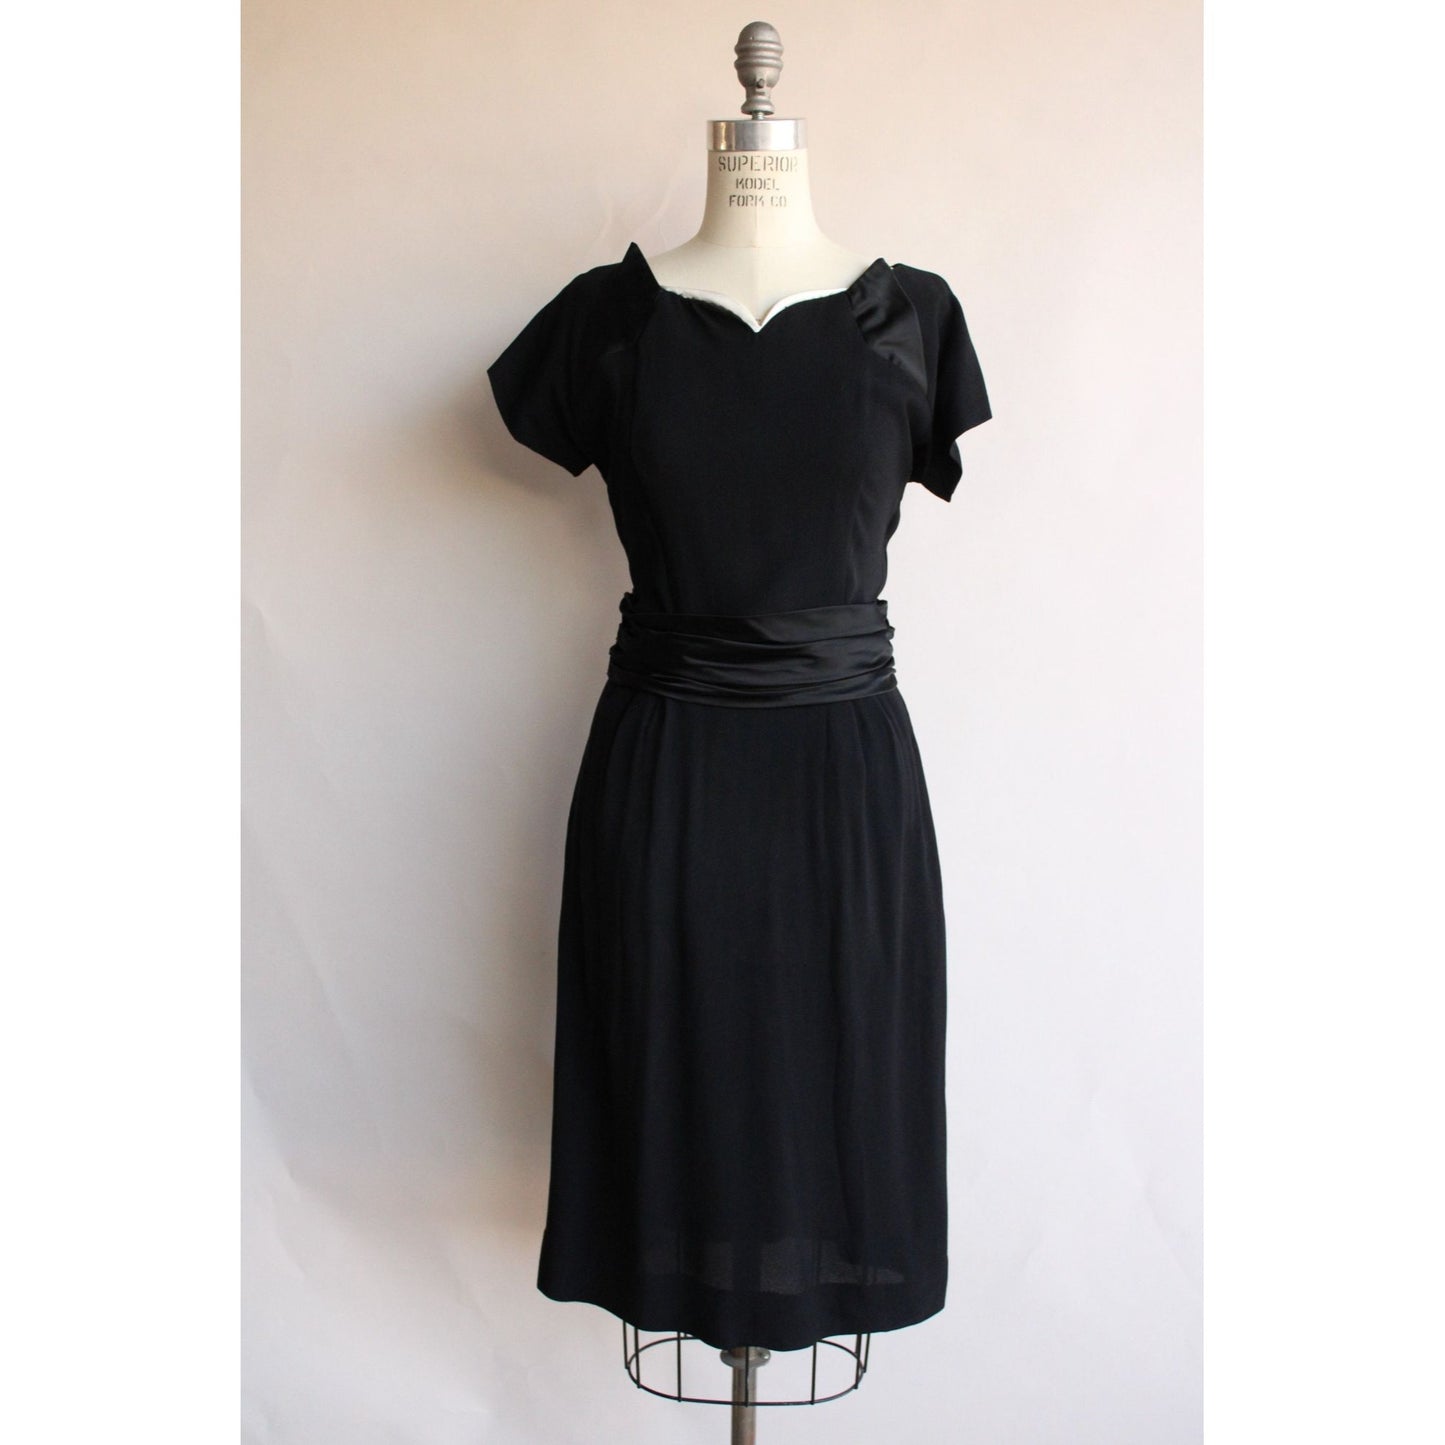 Vintage 1950s  Black Rayon Dress With Cummerbund Belt and Sweetheart Neckline